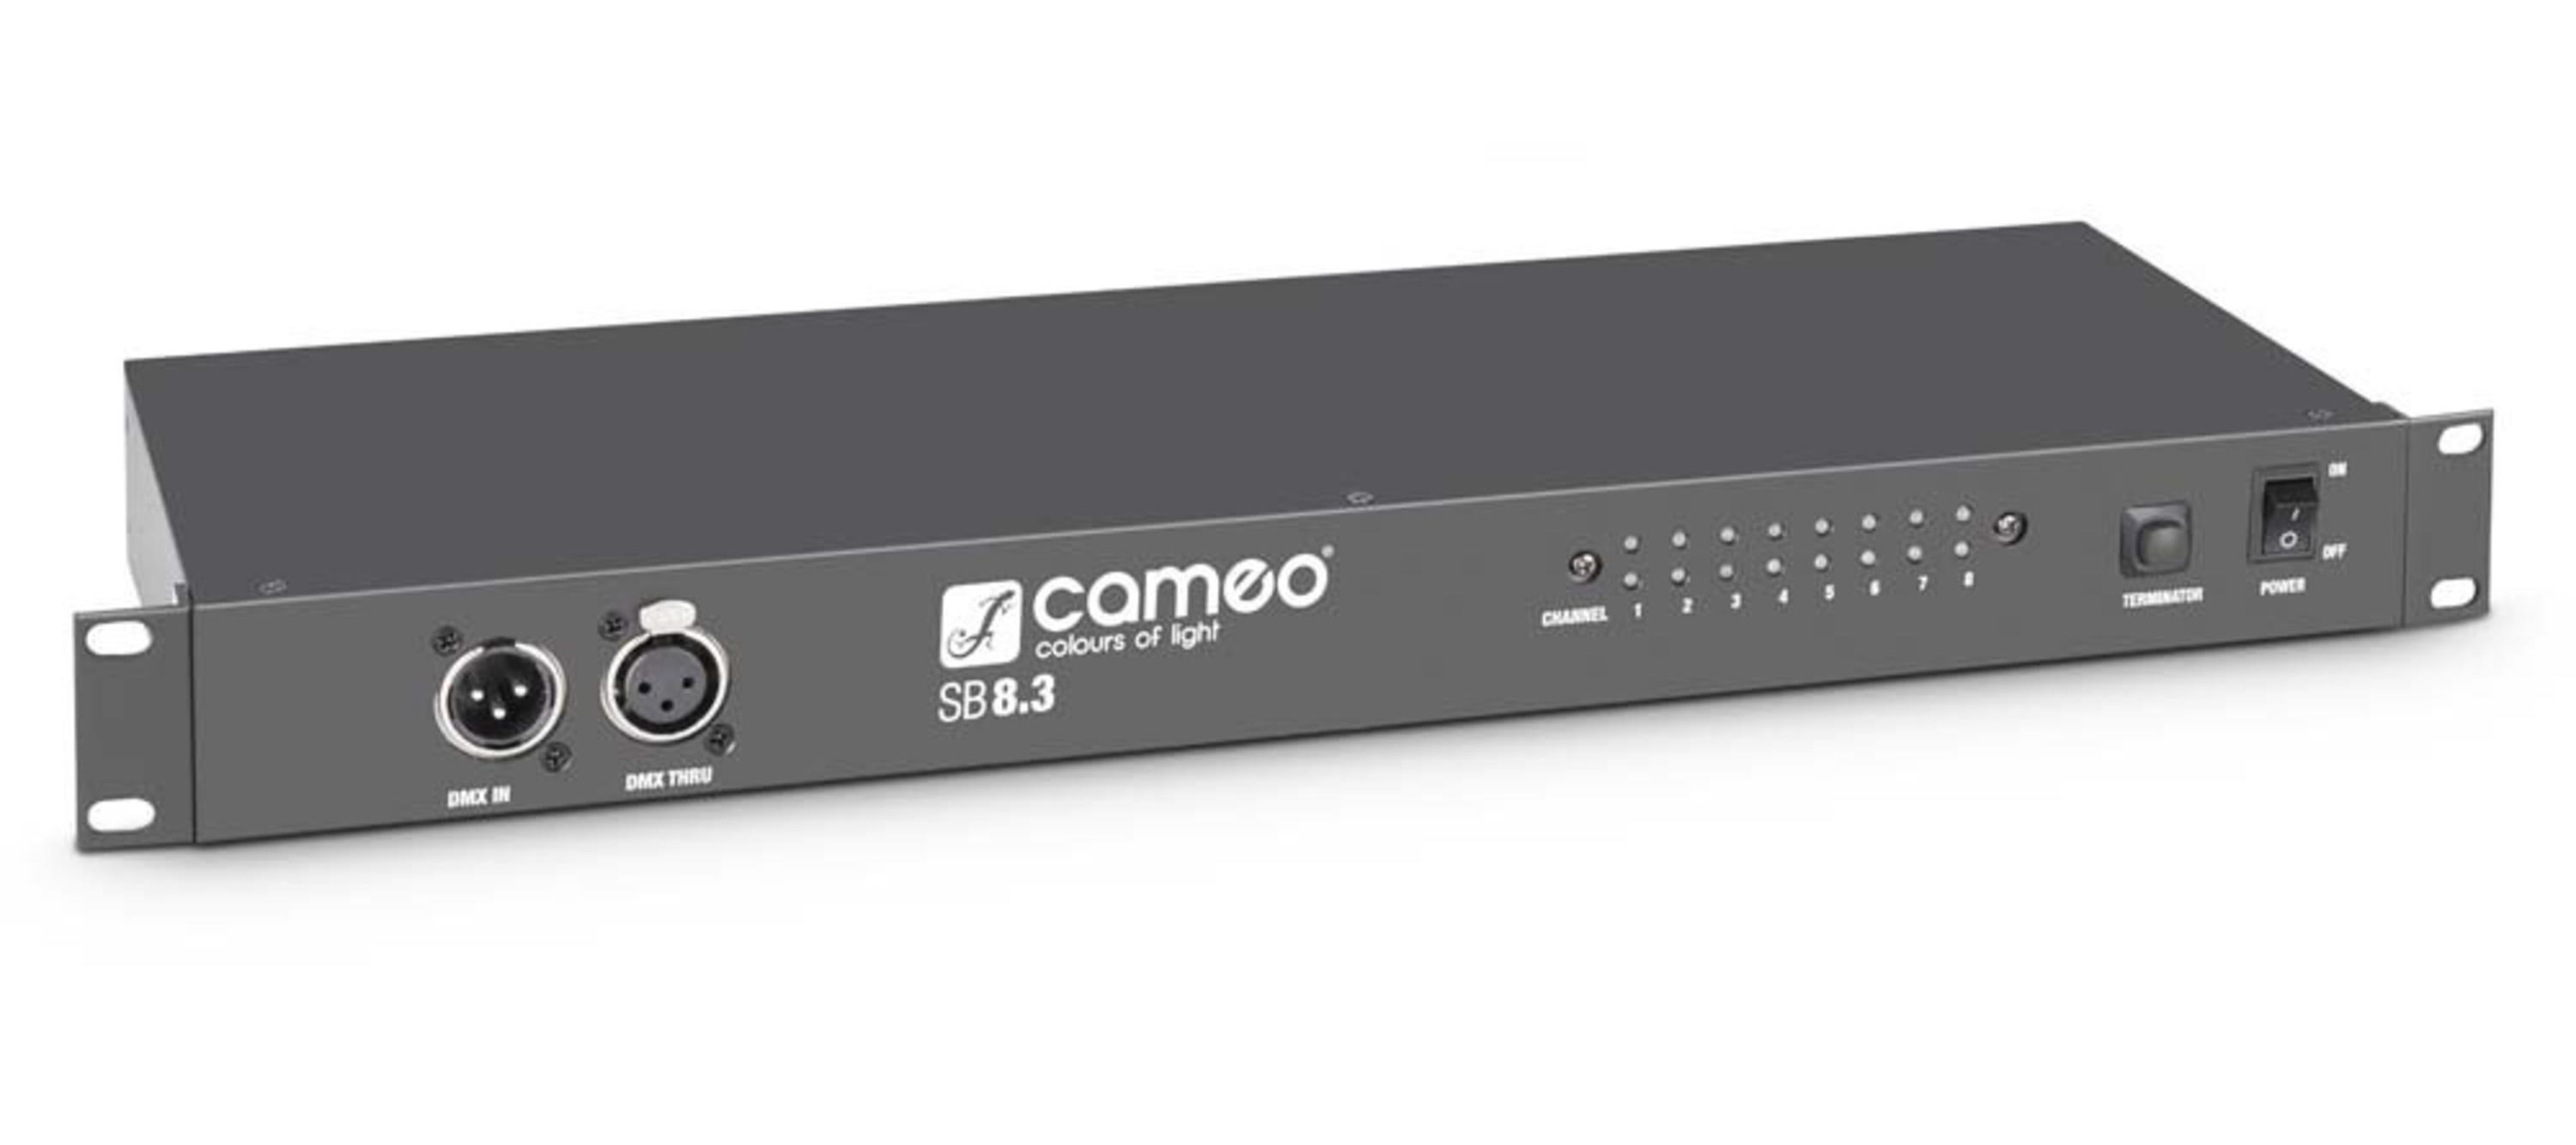 Сплиттеры и приборы обработки и распределения сигнала Cameo SB8.3 tina turner same cd3565 cameo label